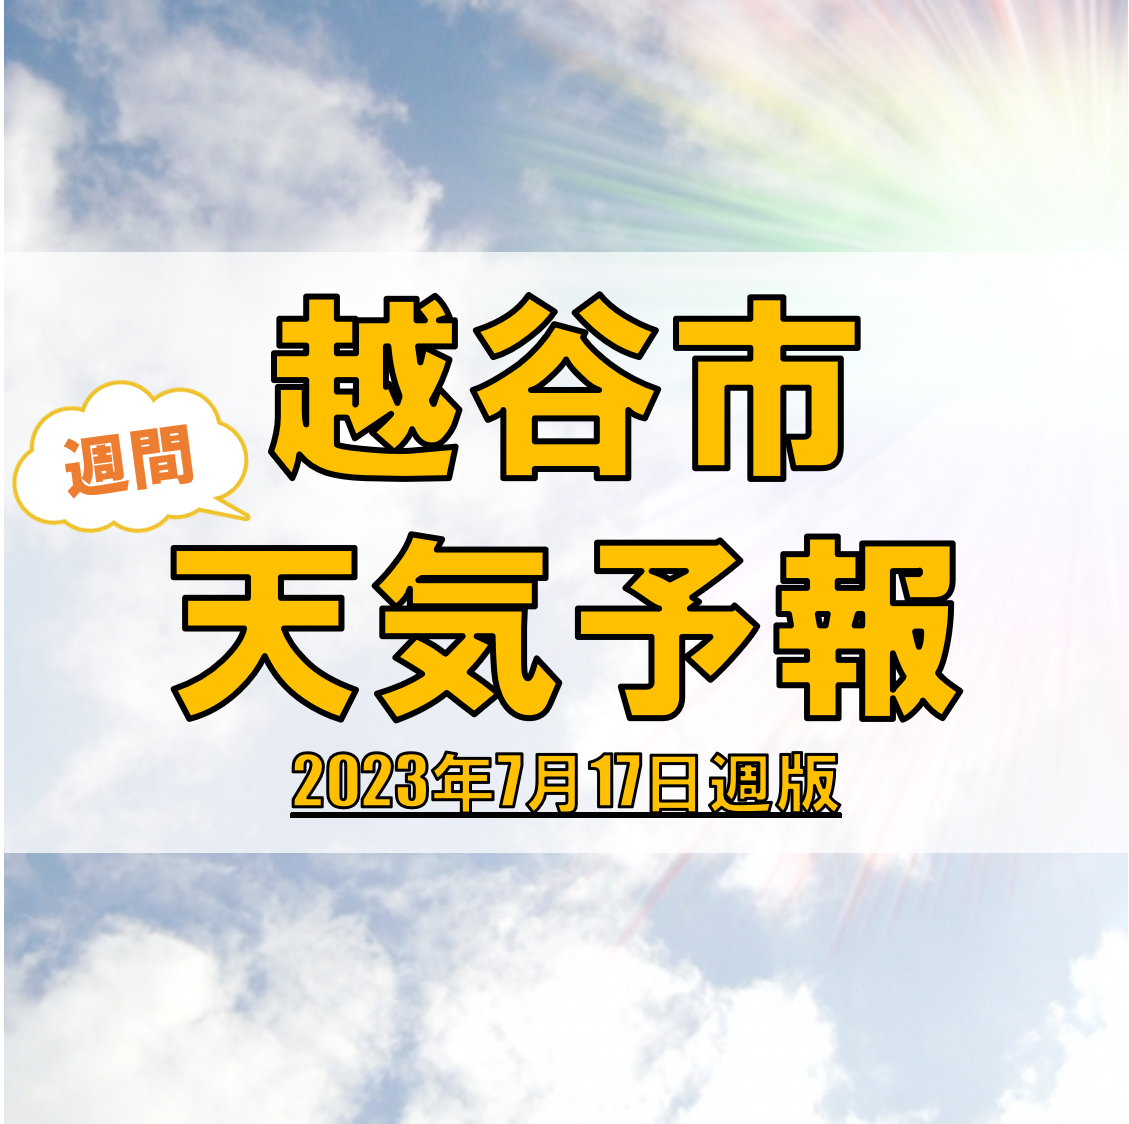 越谷市の天気 週間予報【2023年7月17日週】